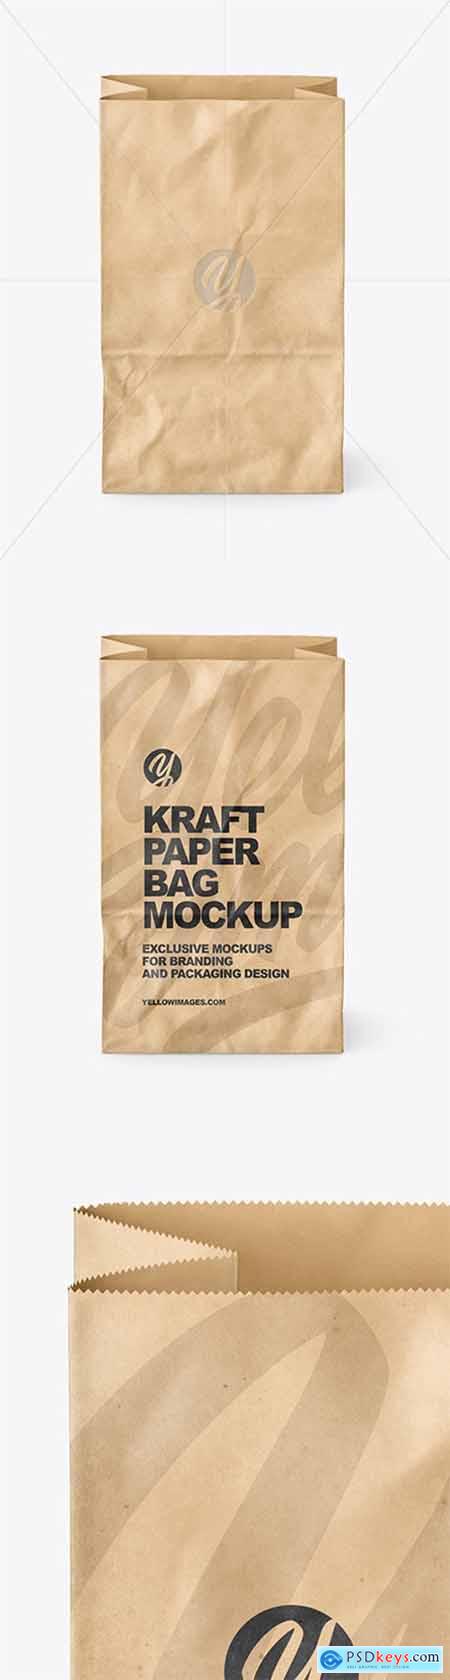 Kraft Paper Bag Mockup 80685